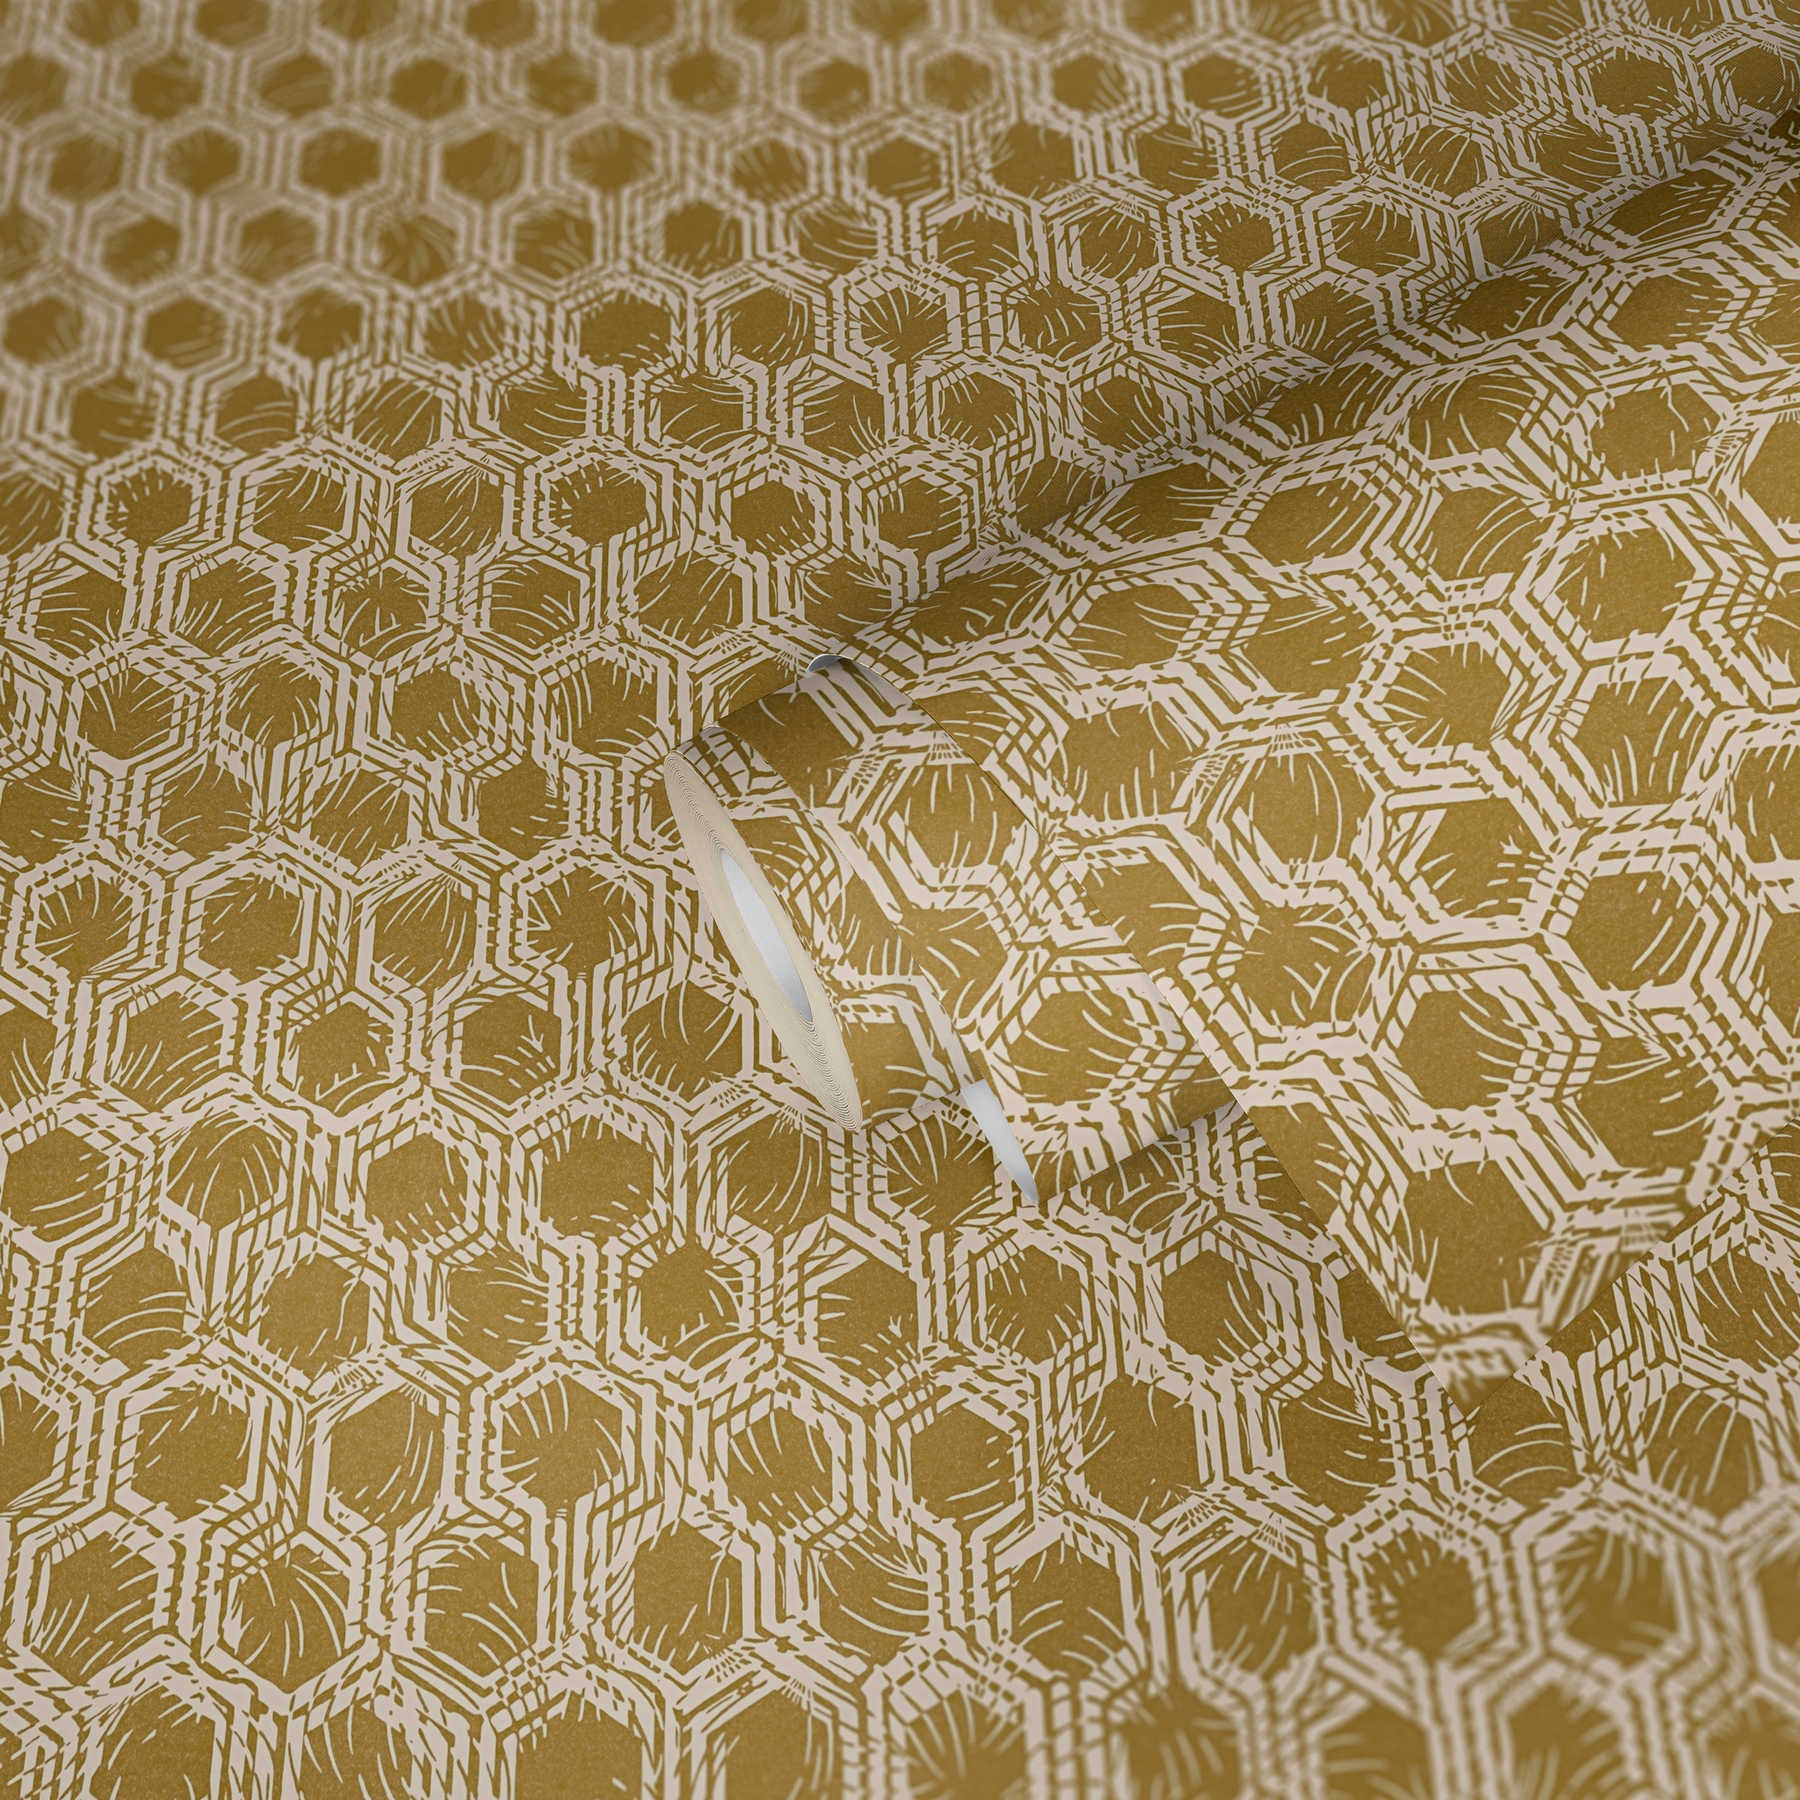             Metallic Tapete mit geometrischen Muster – Gold, Beige
        